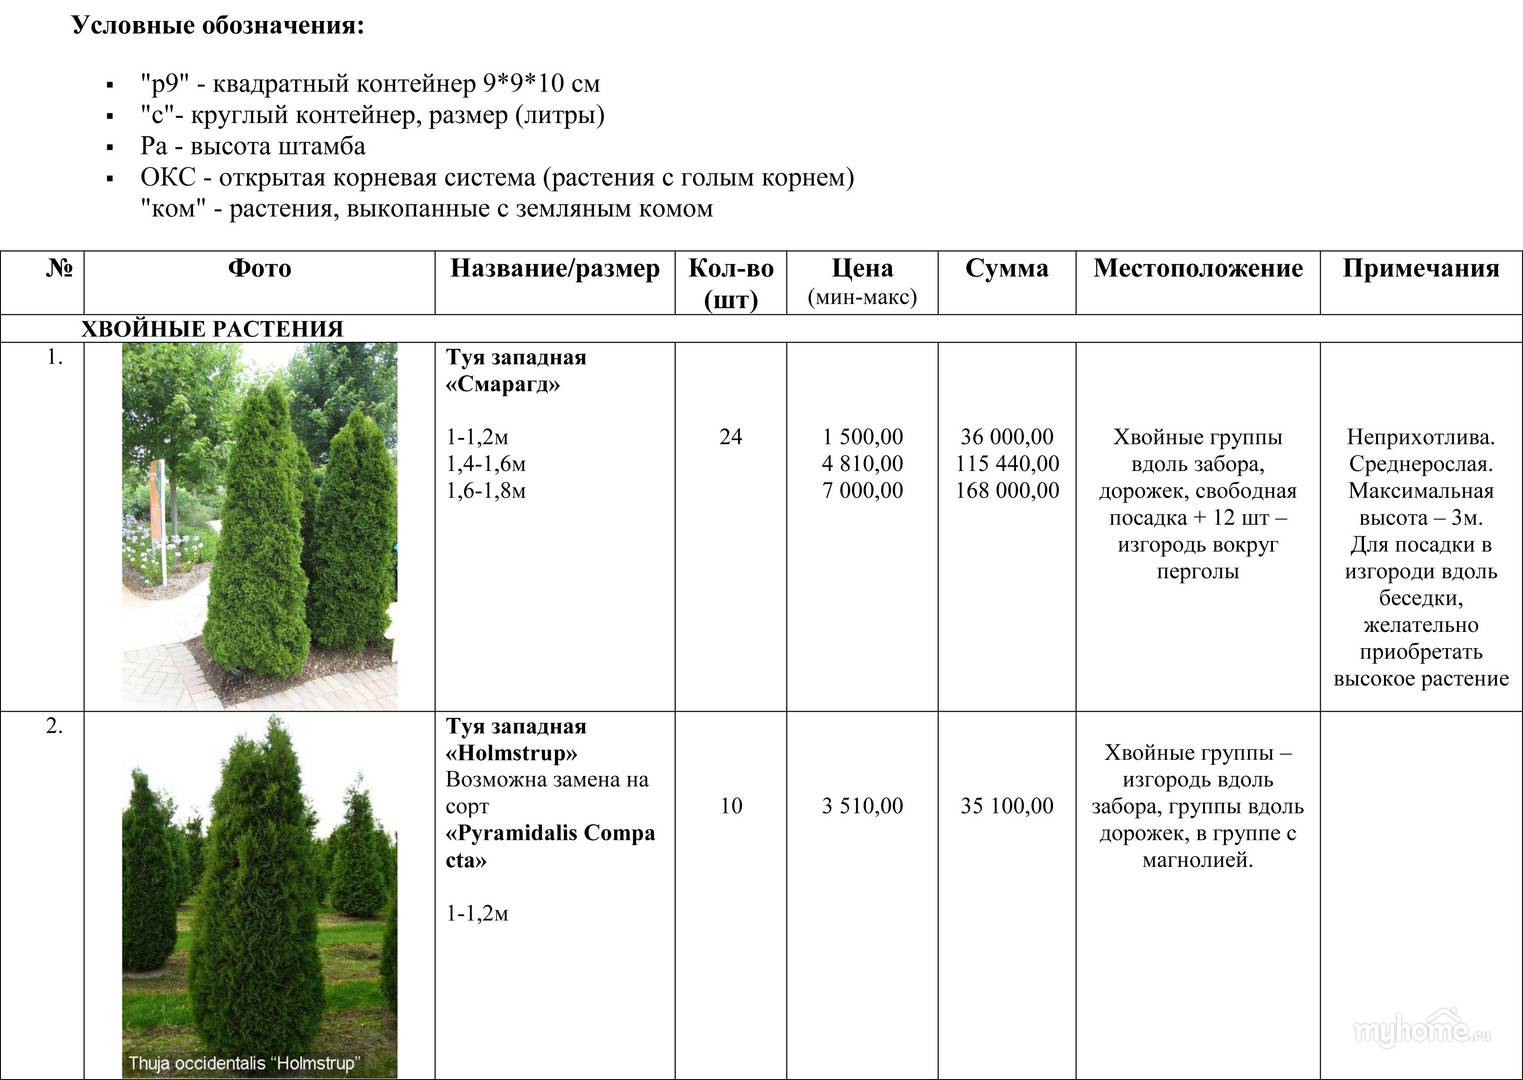 Пример таблицы для ассортиментной ведомости растений